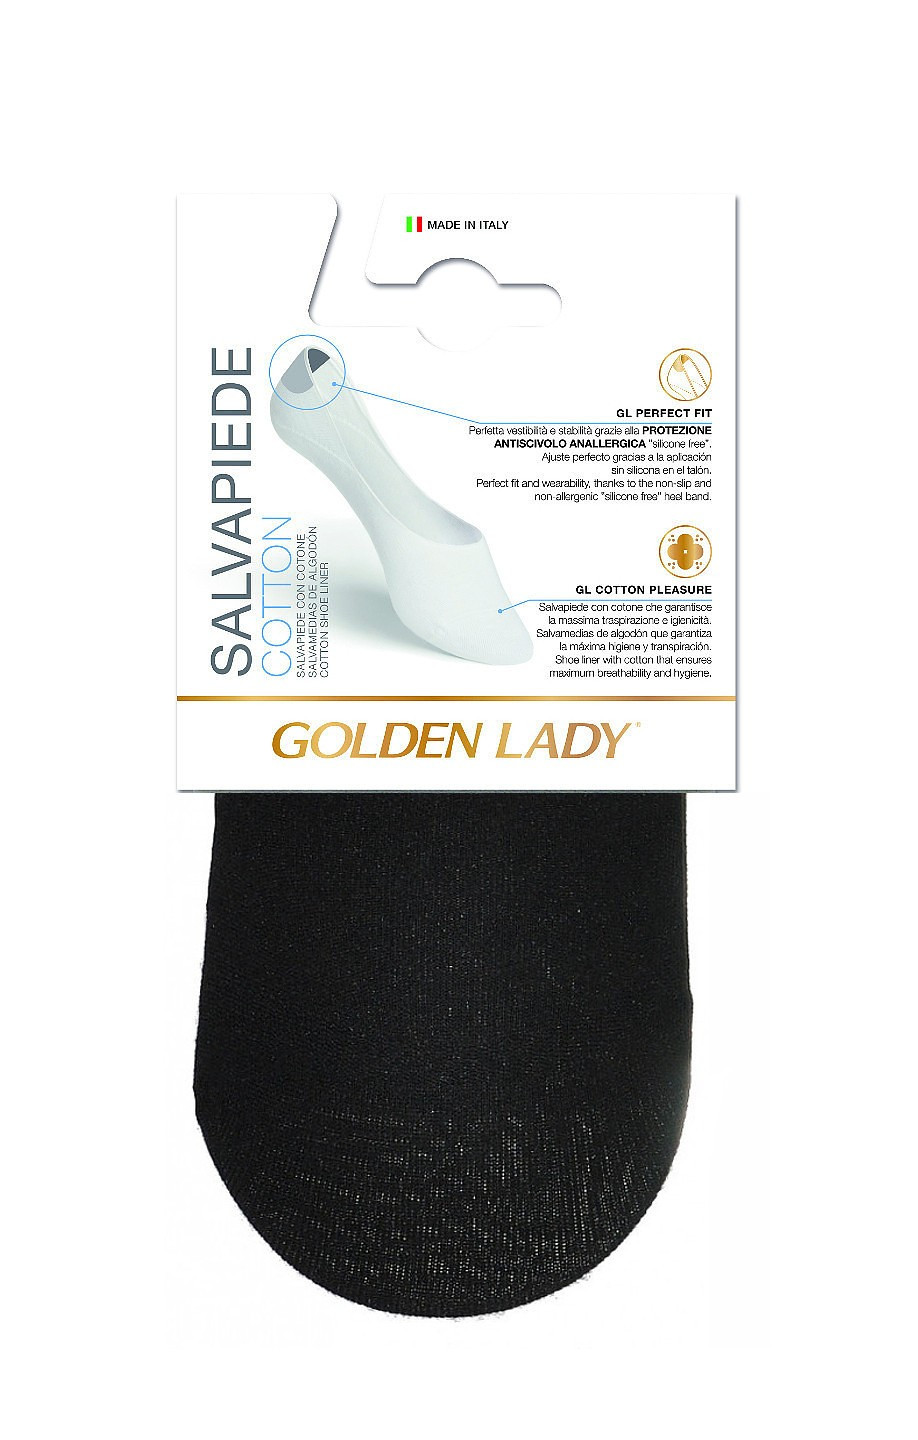 Dámské kotníkové ponožky Cotton A'2 naturale 3942 model 6216988 - Golden Lady